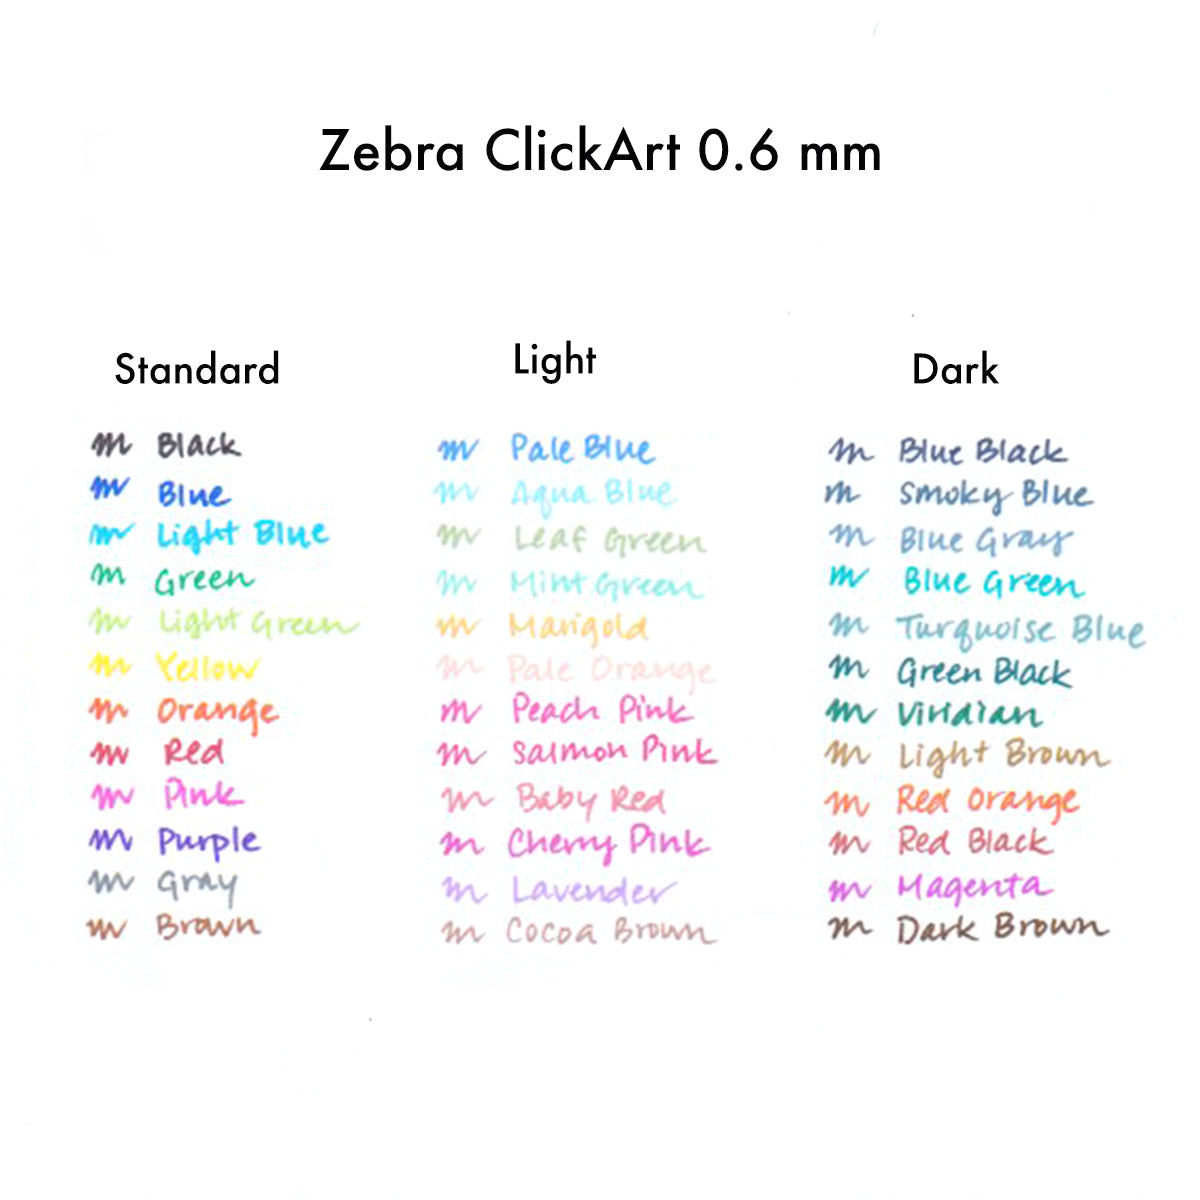 Zebra Clickart Retractable Marker 0.6 mm (Set of 36)